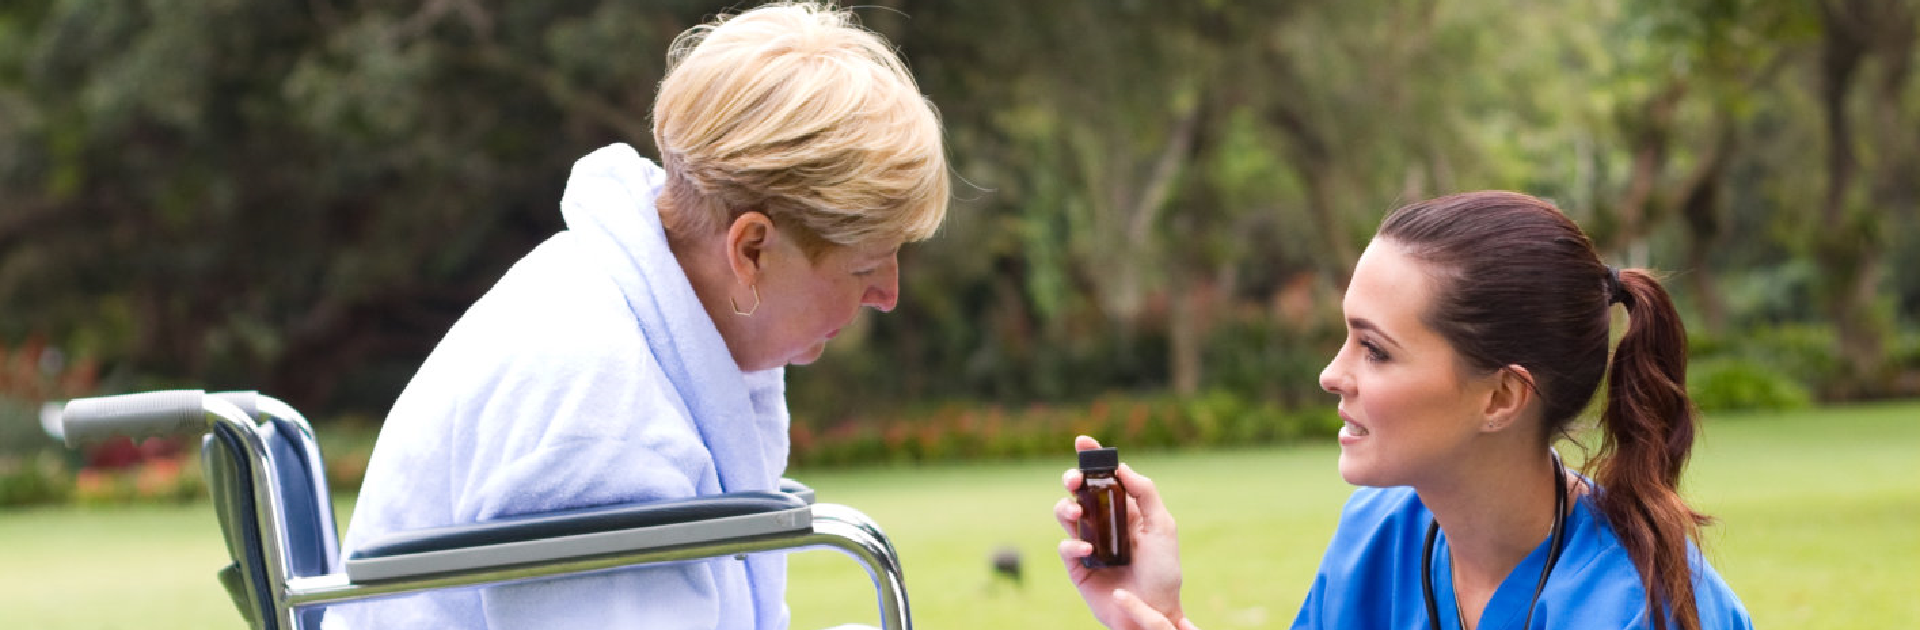 caregiver holding a medicine